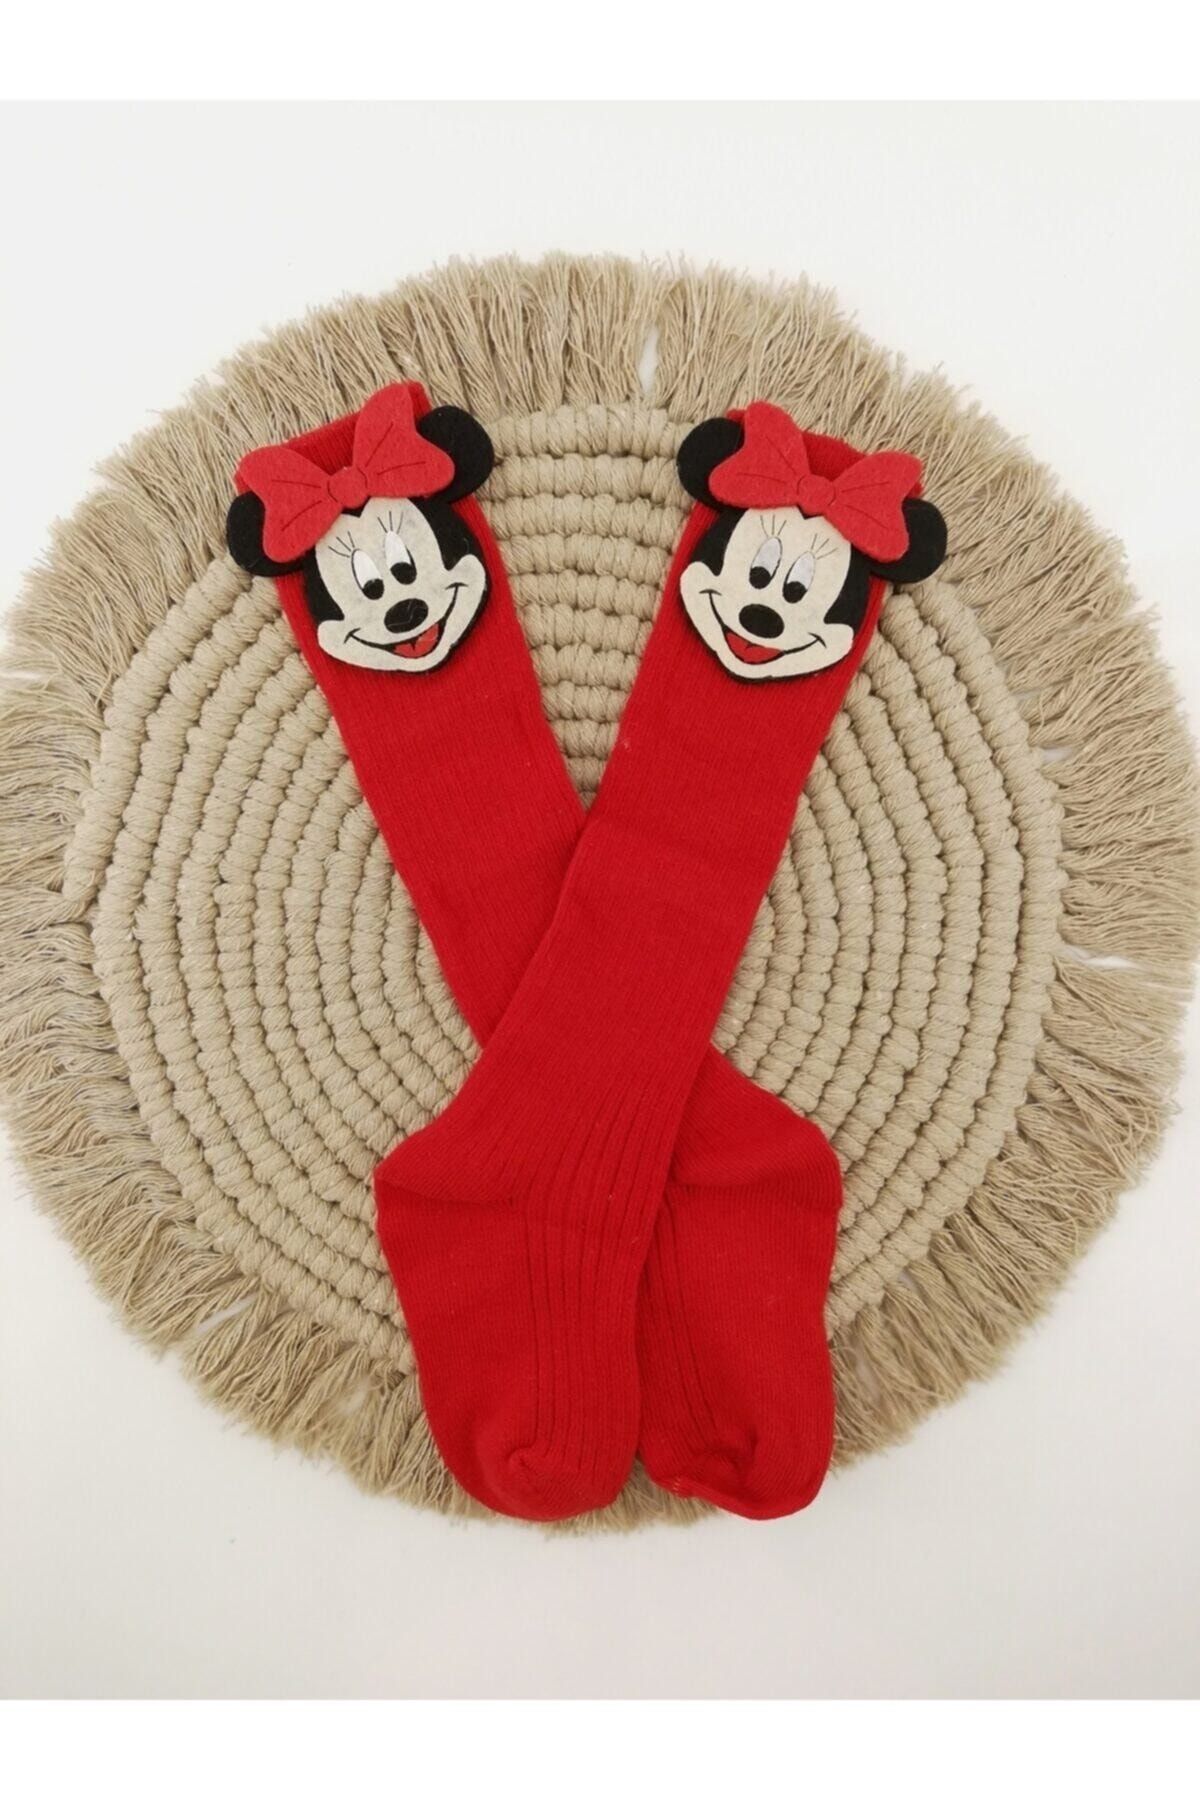 ESES BEBE Minnie Mouse Figürlü Keçe Süslü Kız Bebek Diz Altı Çorap 0-3 Yaş